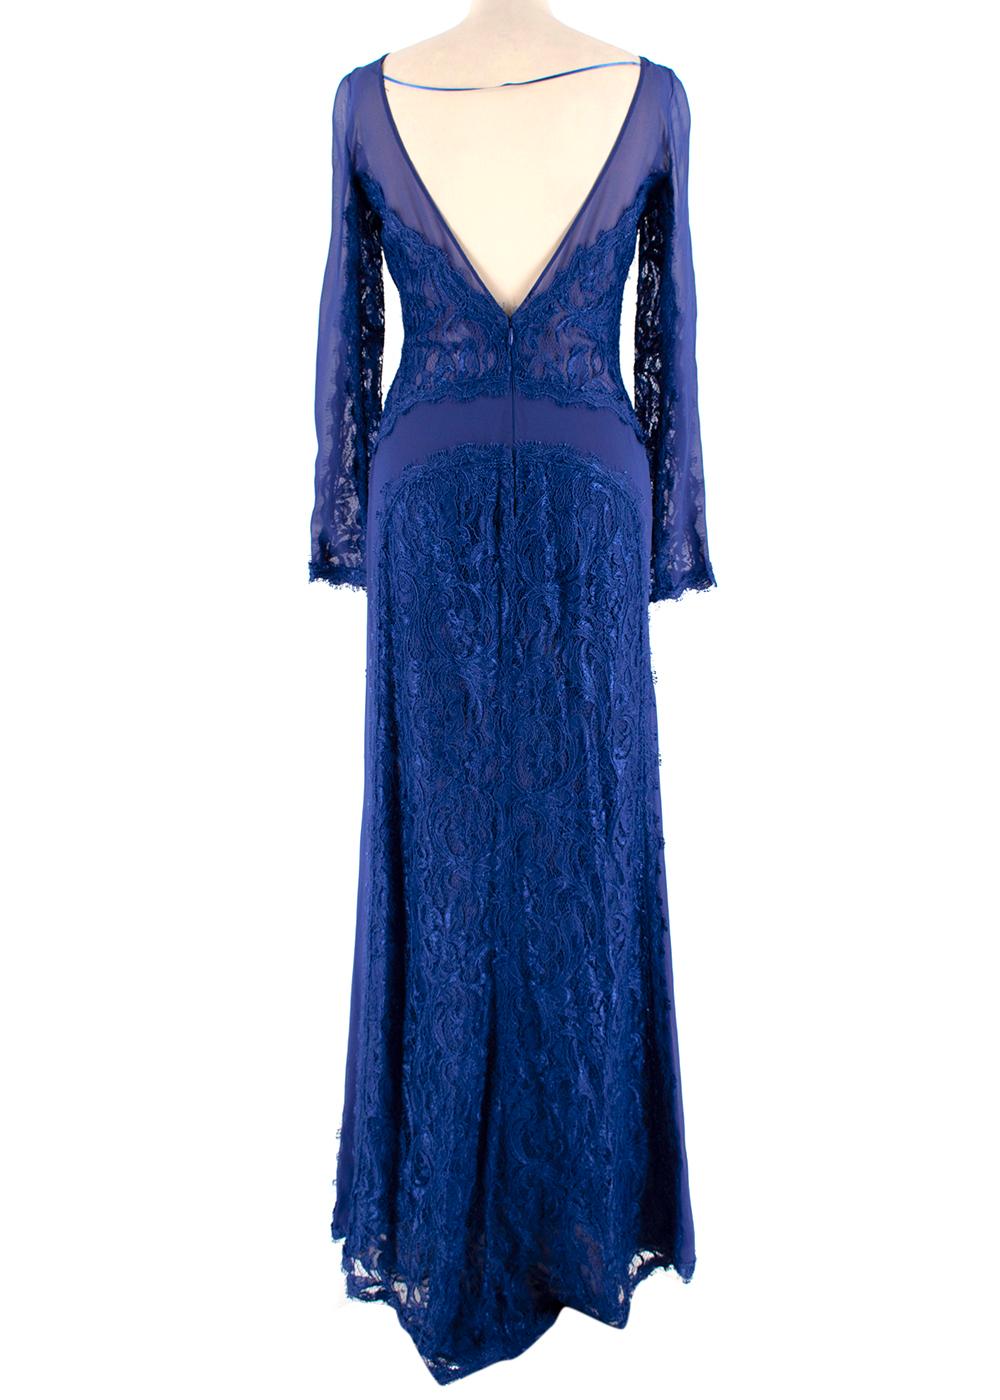 Women's or Men's Emilio Pucci Blue Lace Illusion Gown - Size US 0-2 For Sale